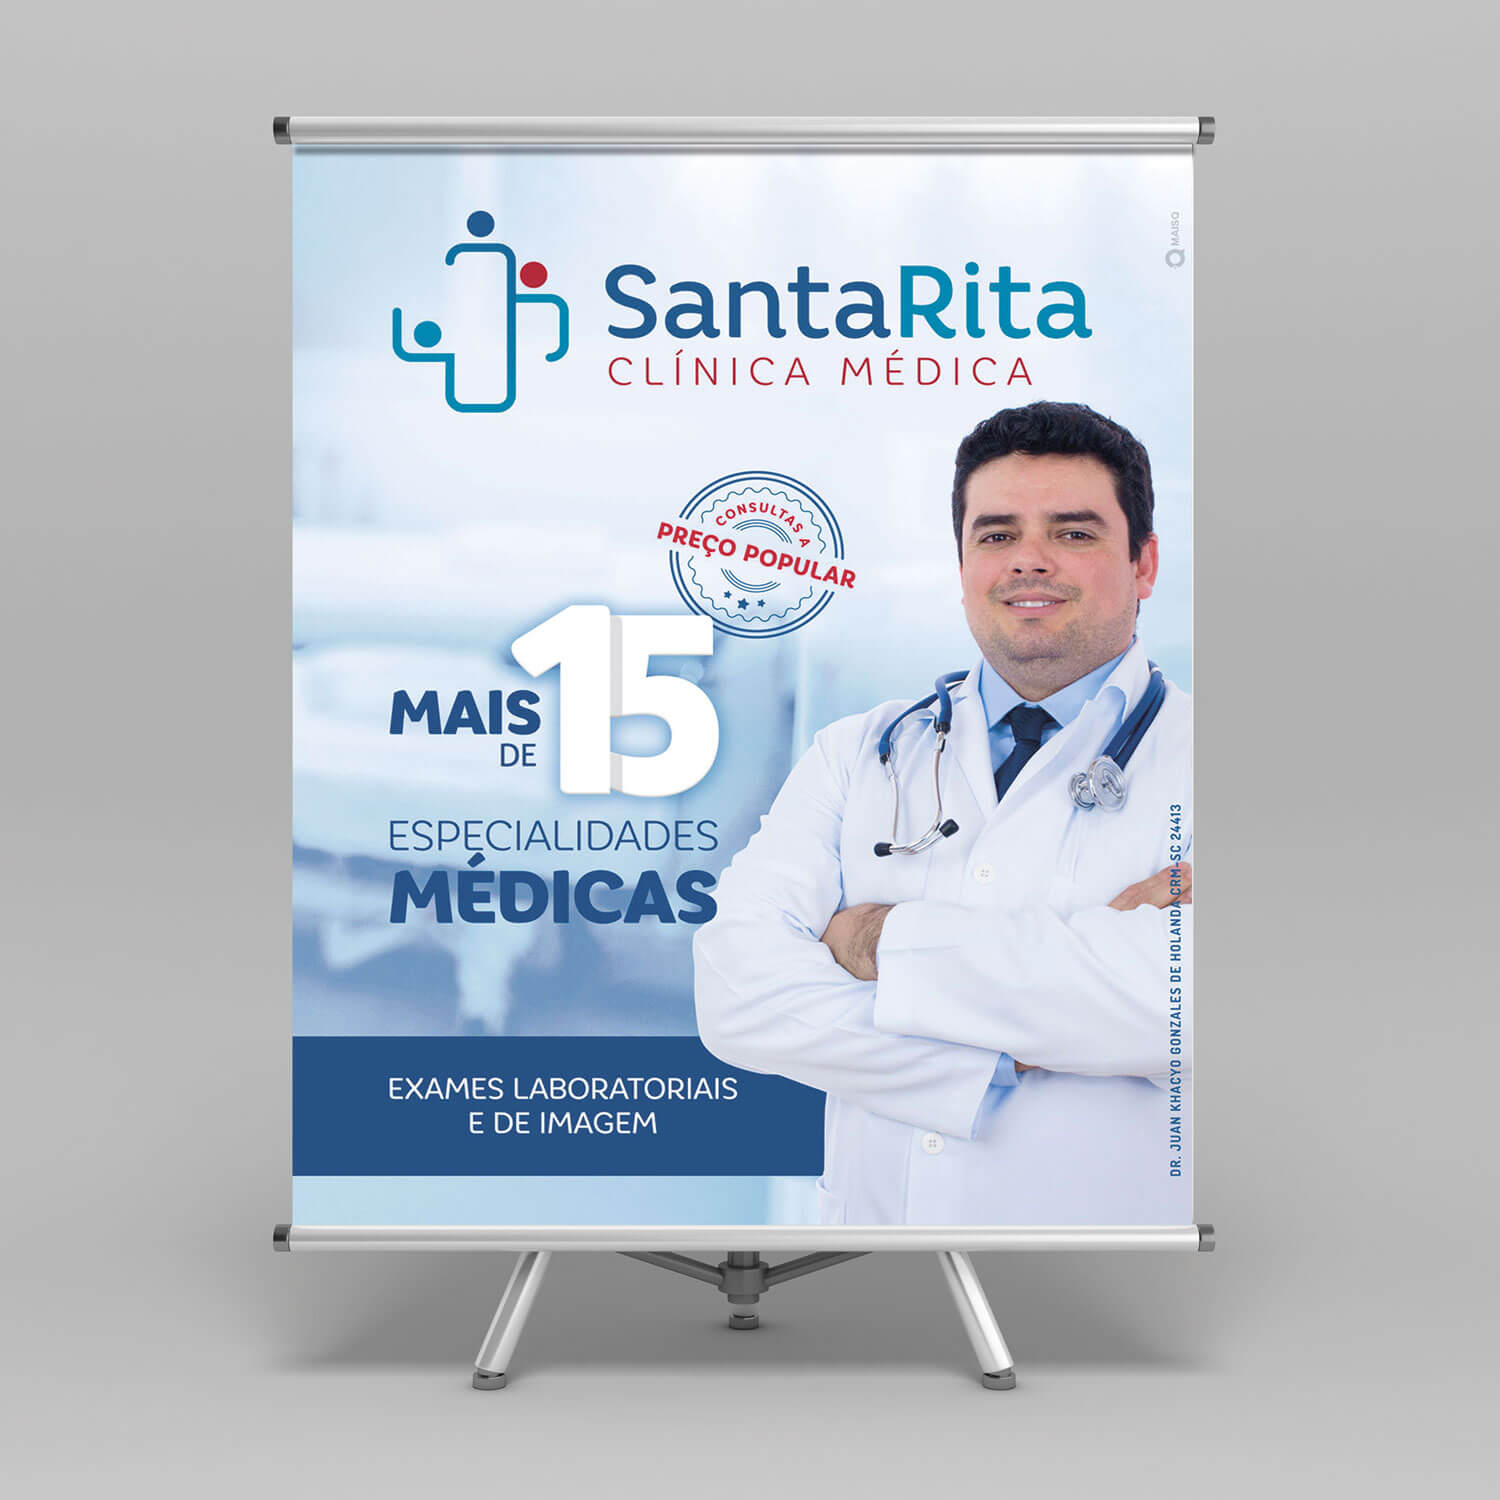 criacao_arte_site_clinica_medica_agencia_publicidade_maisq_1